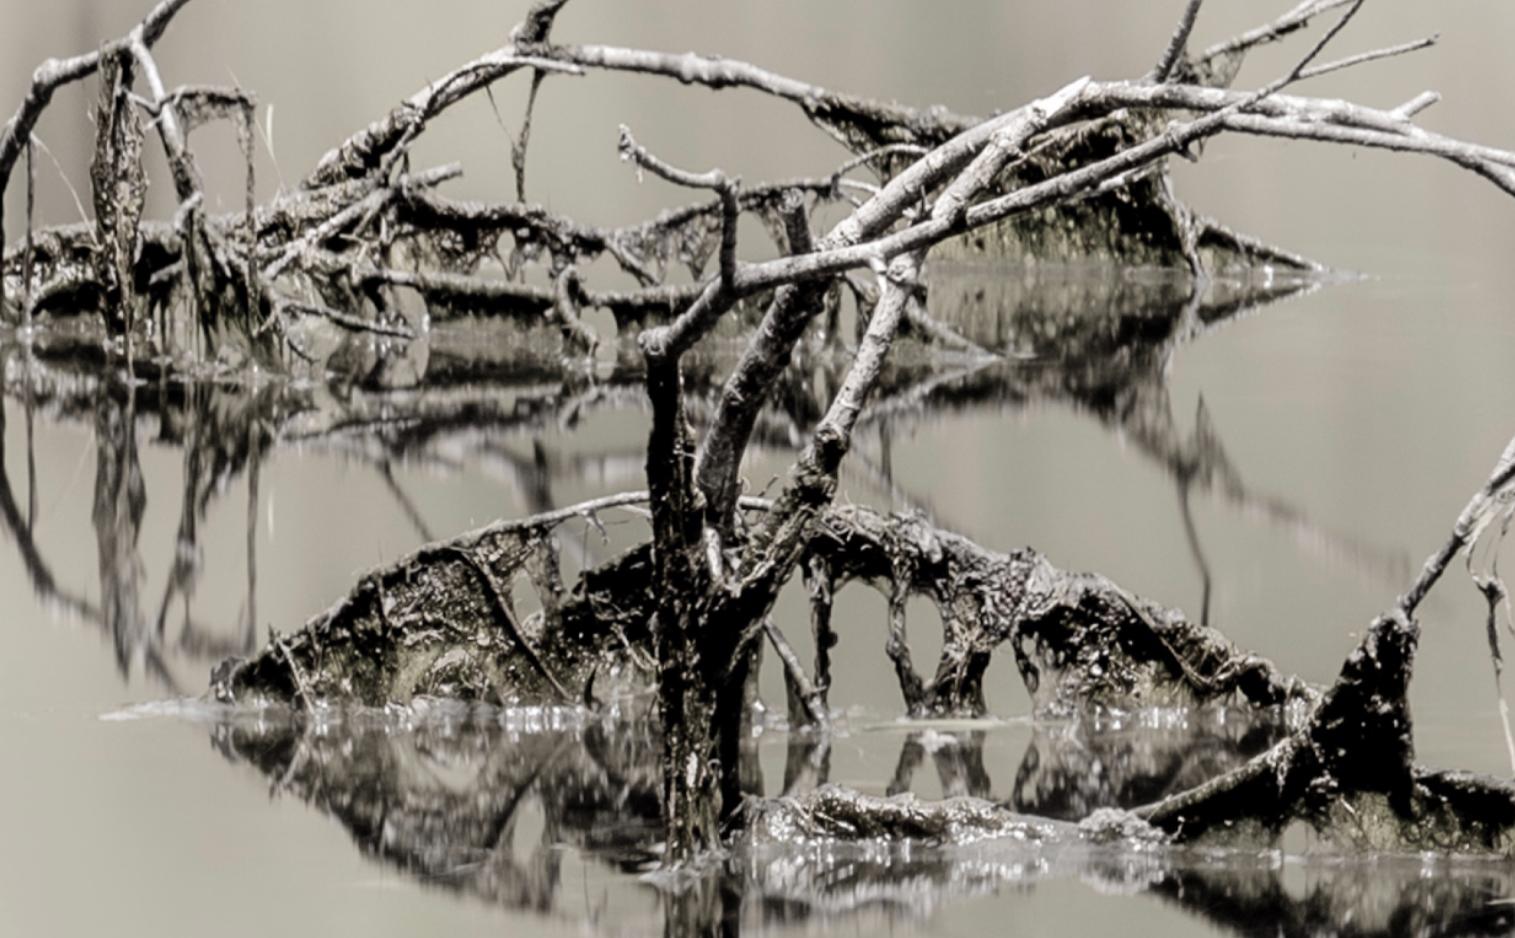 Teil der Kollektion The Shape of Water des spanischen Fotografen Cuco de Frutos. Anhand dieser Originalfotografie lässt uns der Künstler erkennen, wie das Alltägliche zum Außergewöhnlichen wird. Hier liegt die Silhouette von Danaë, der